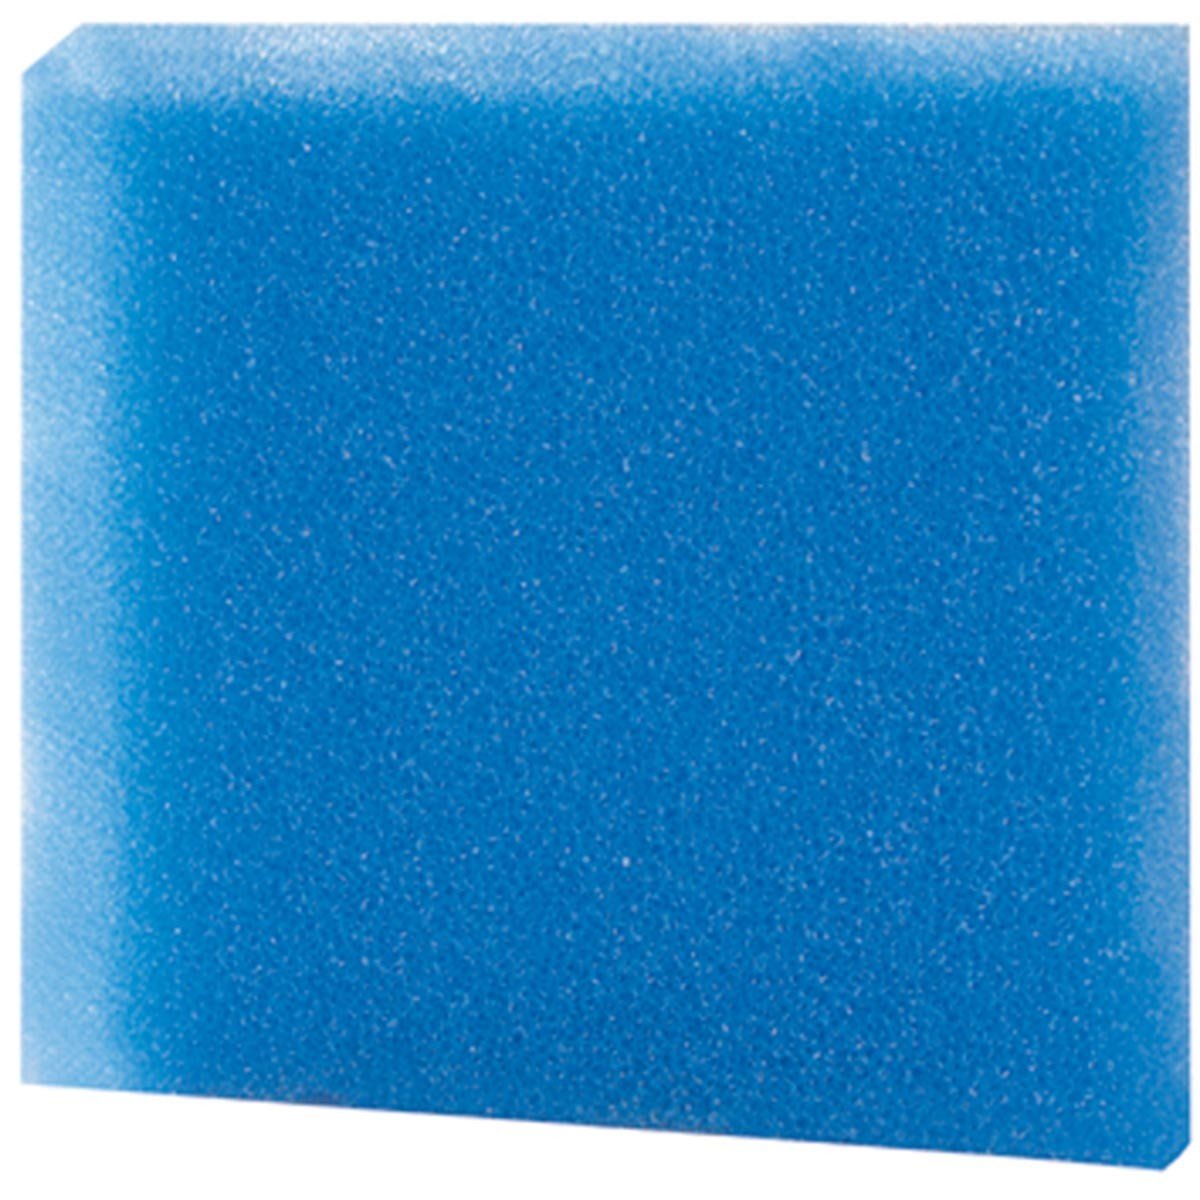 Hobby jemná filtrační pěna, modrá 50x50x3cm